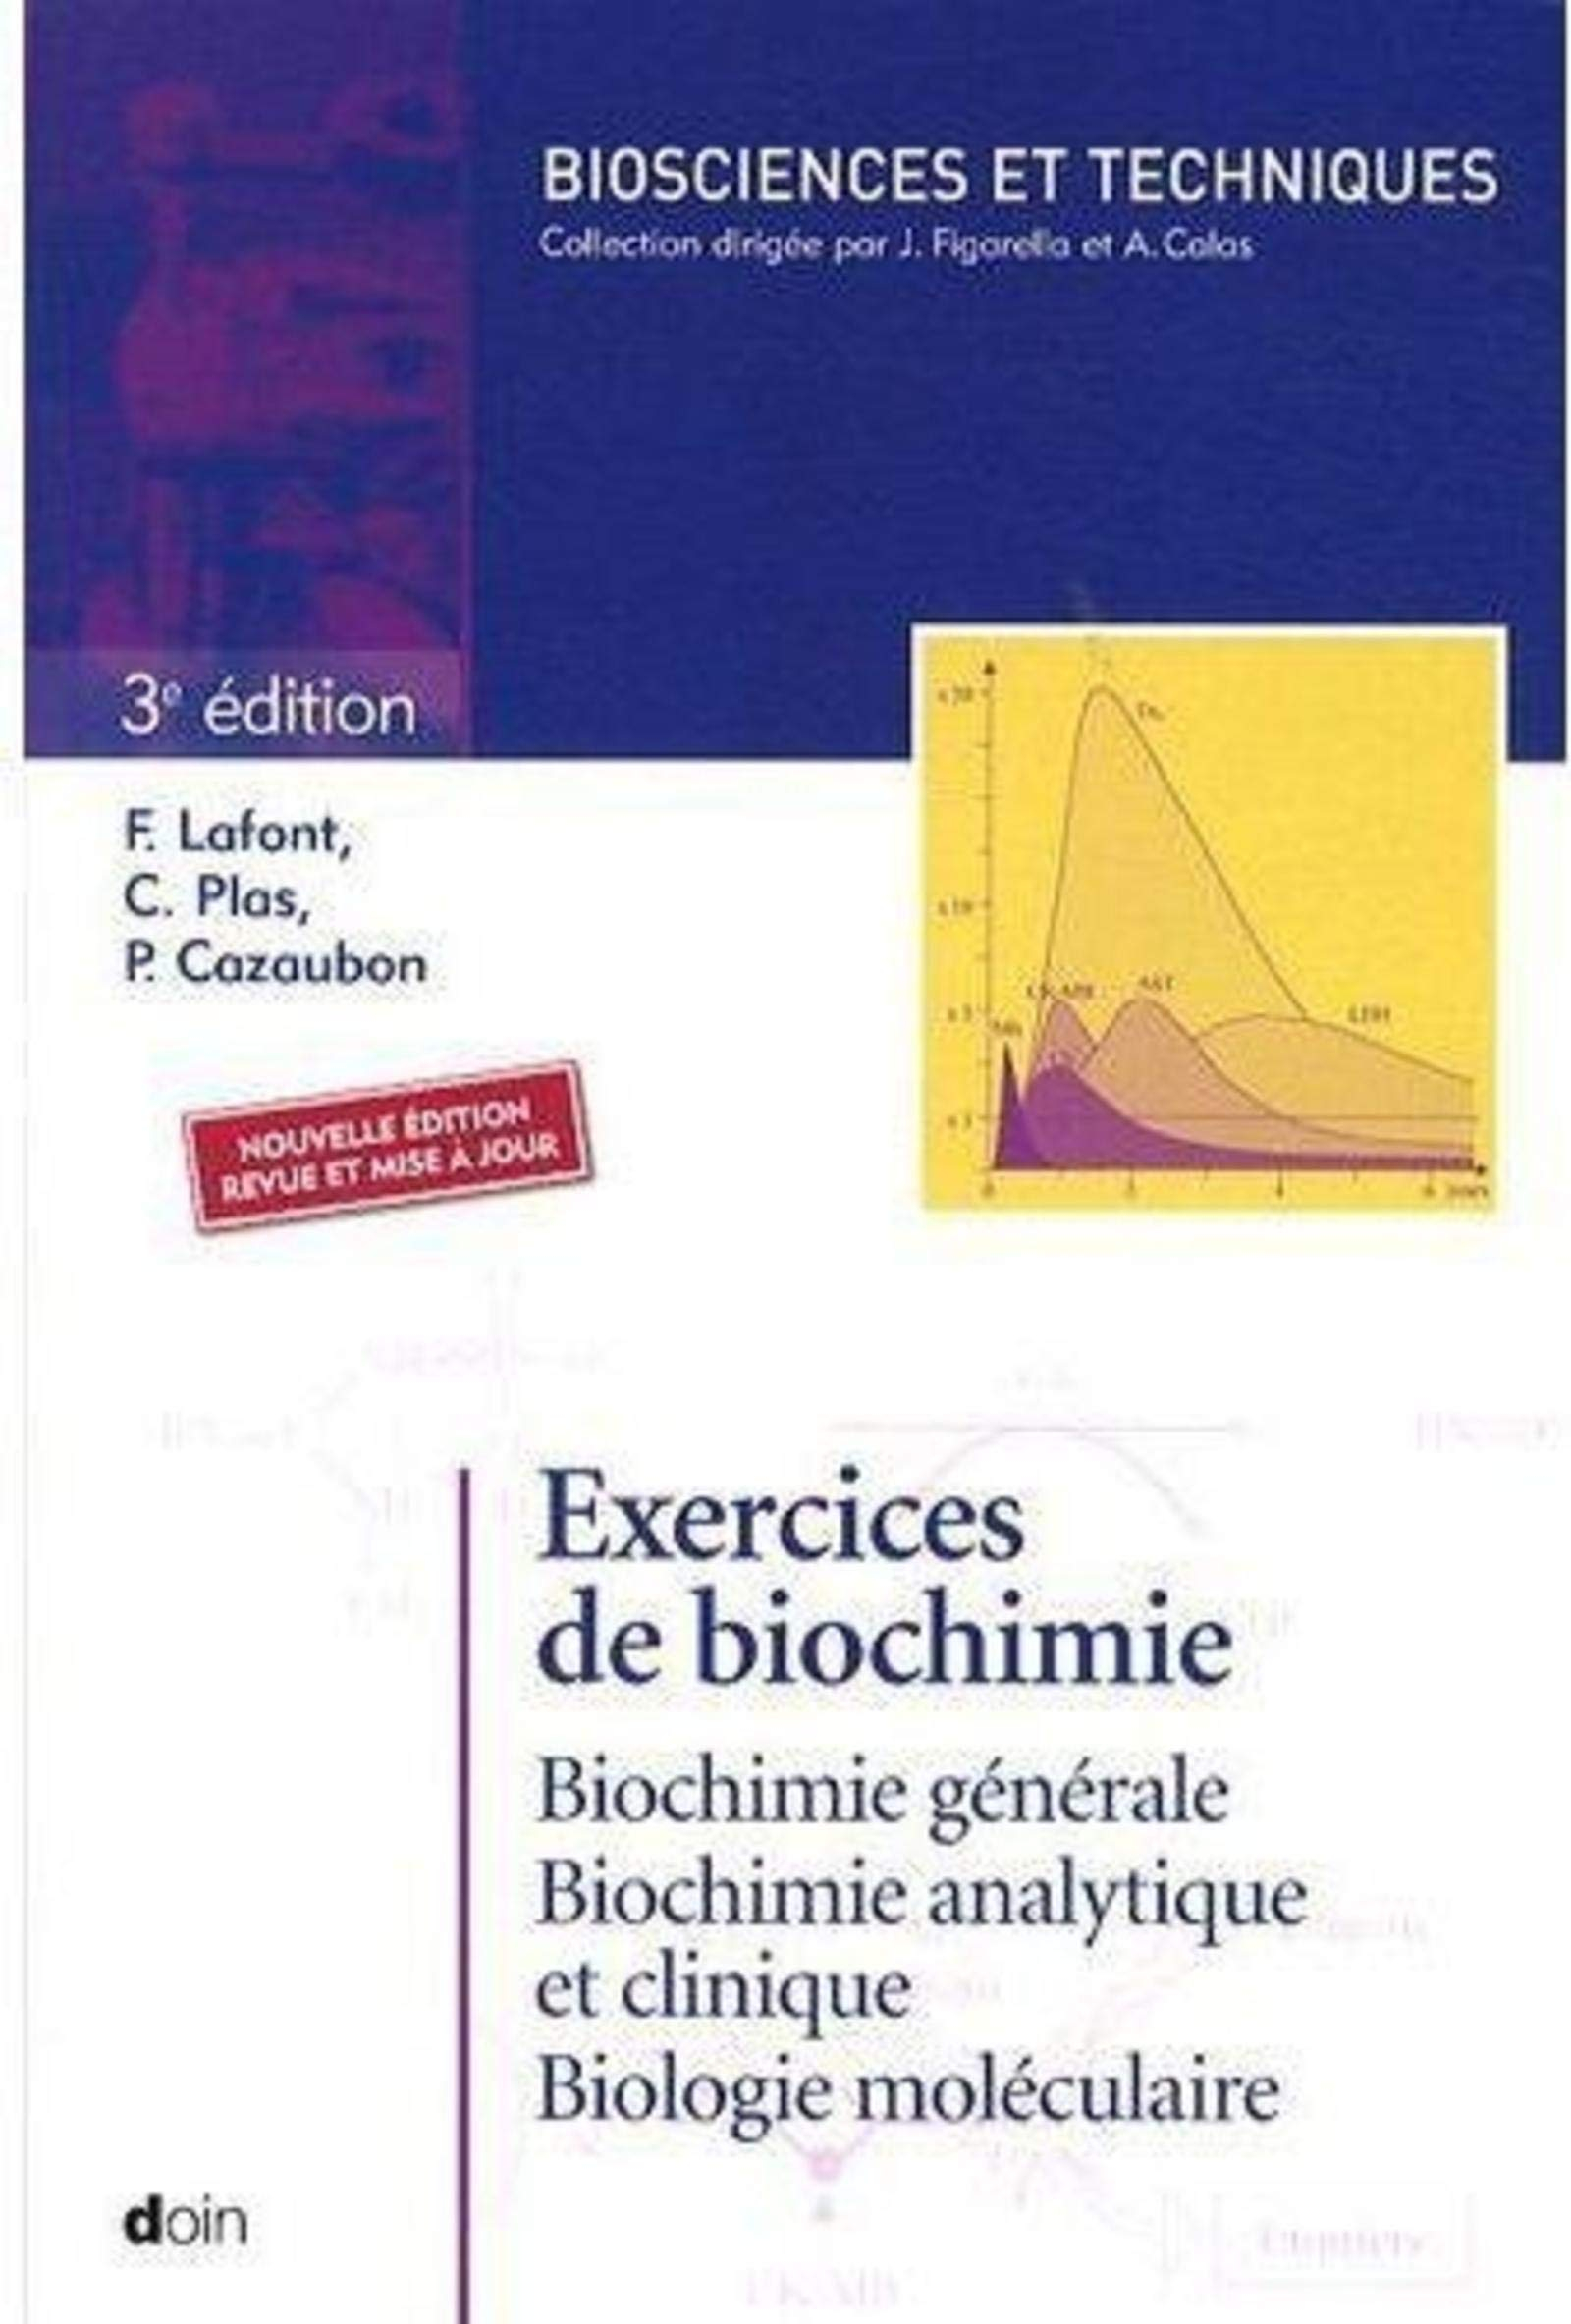 Exercices de biochimie : biochimie générale, biochimie analytique et clinique, biochimie moléculaire